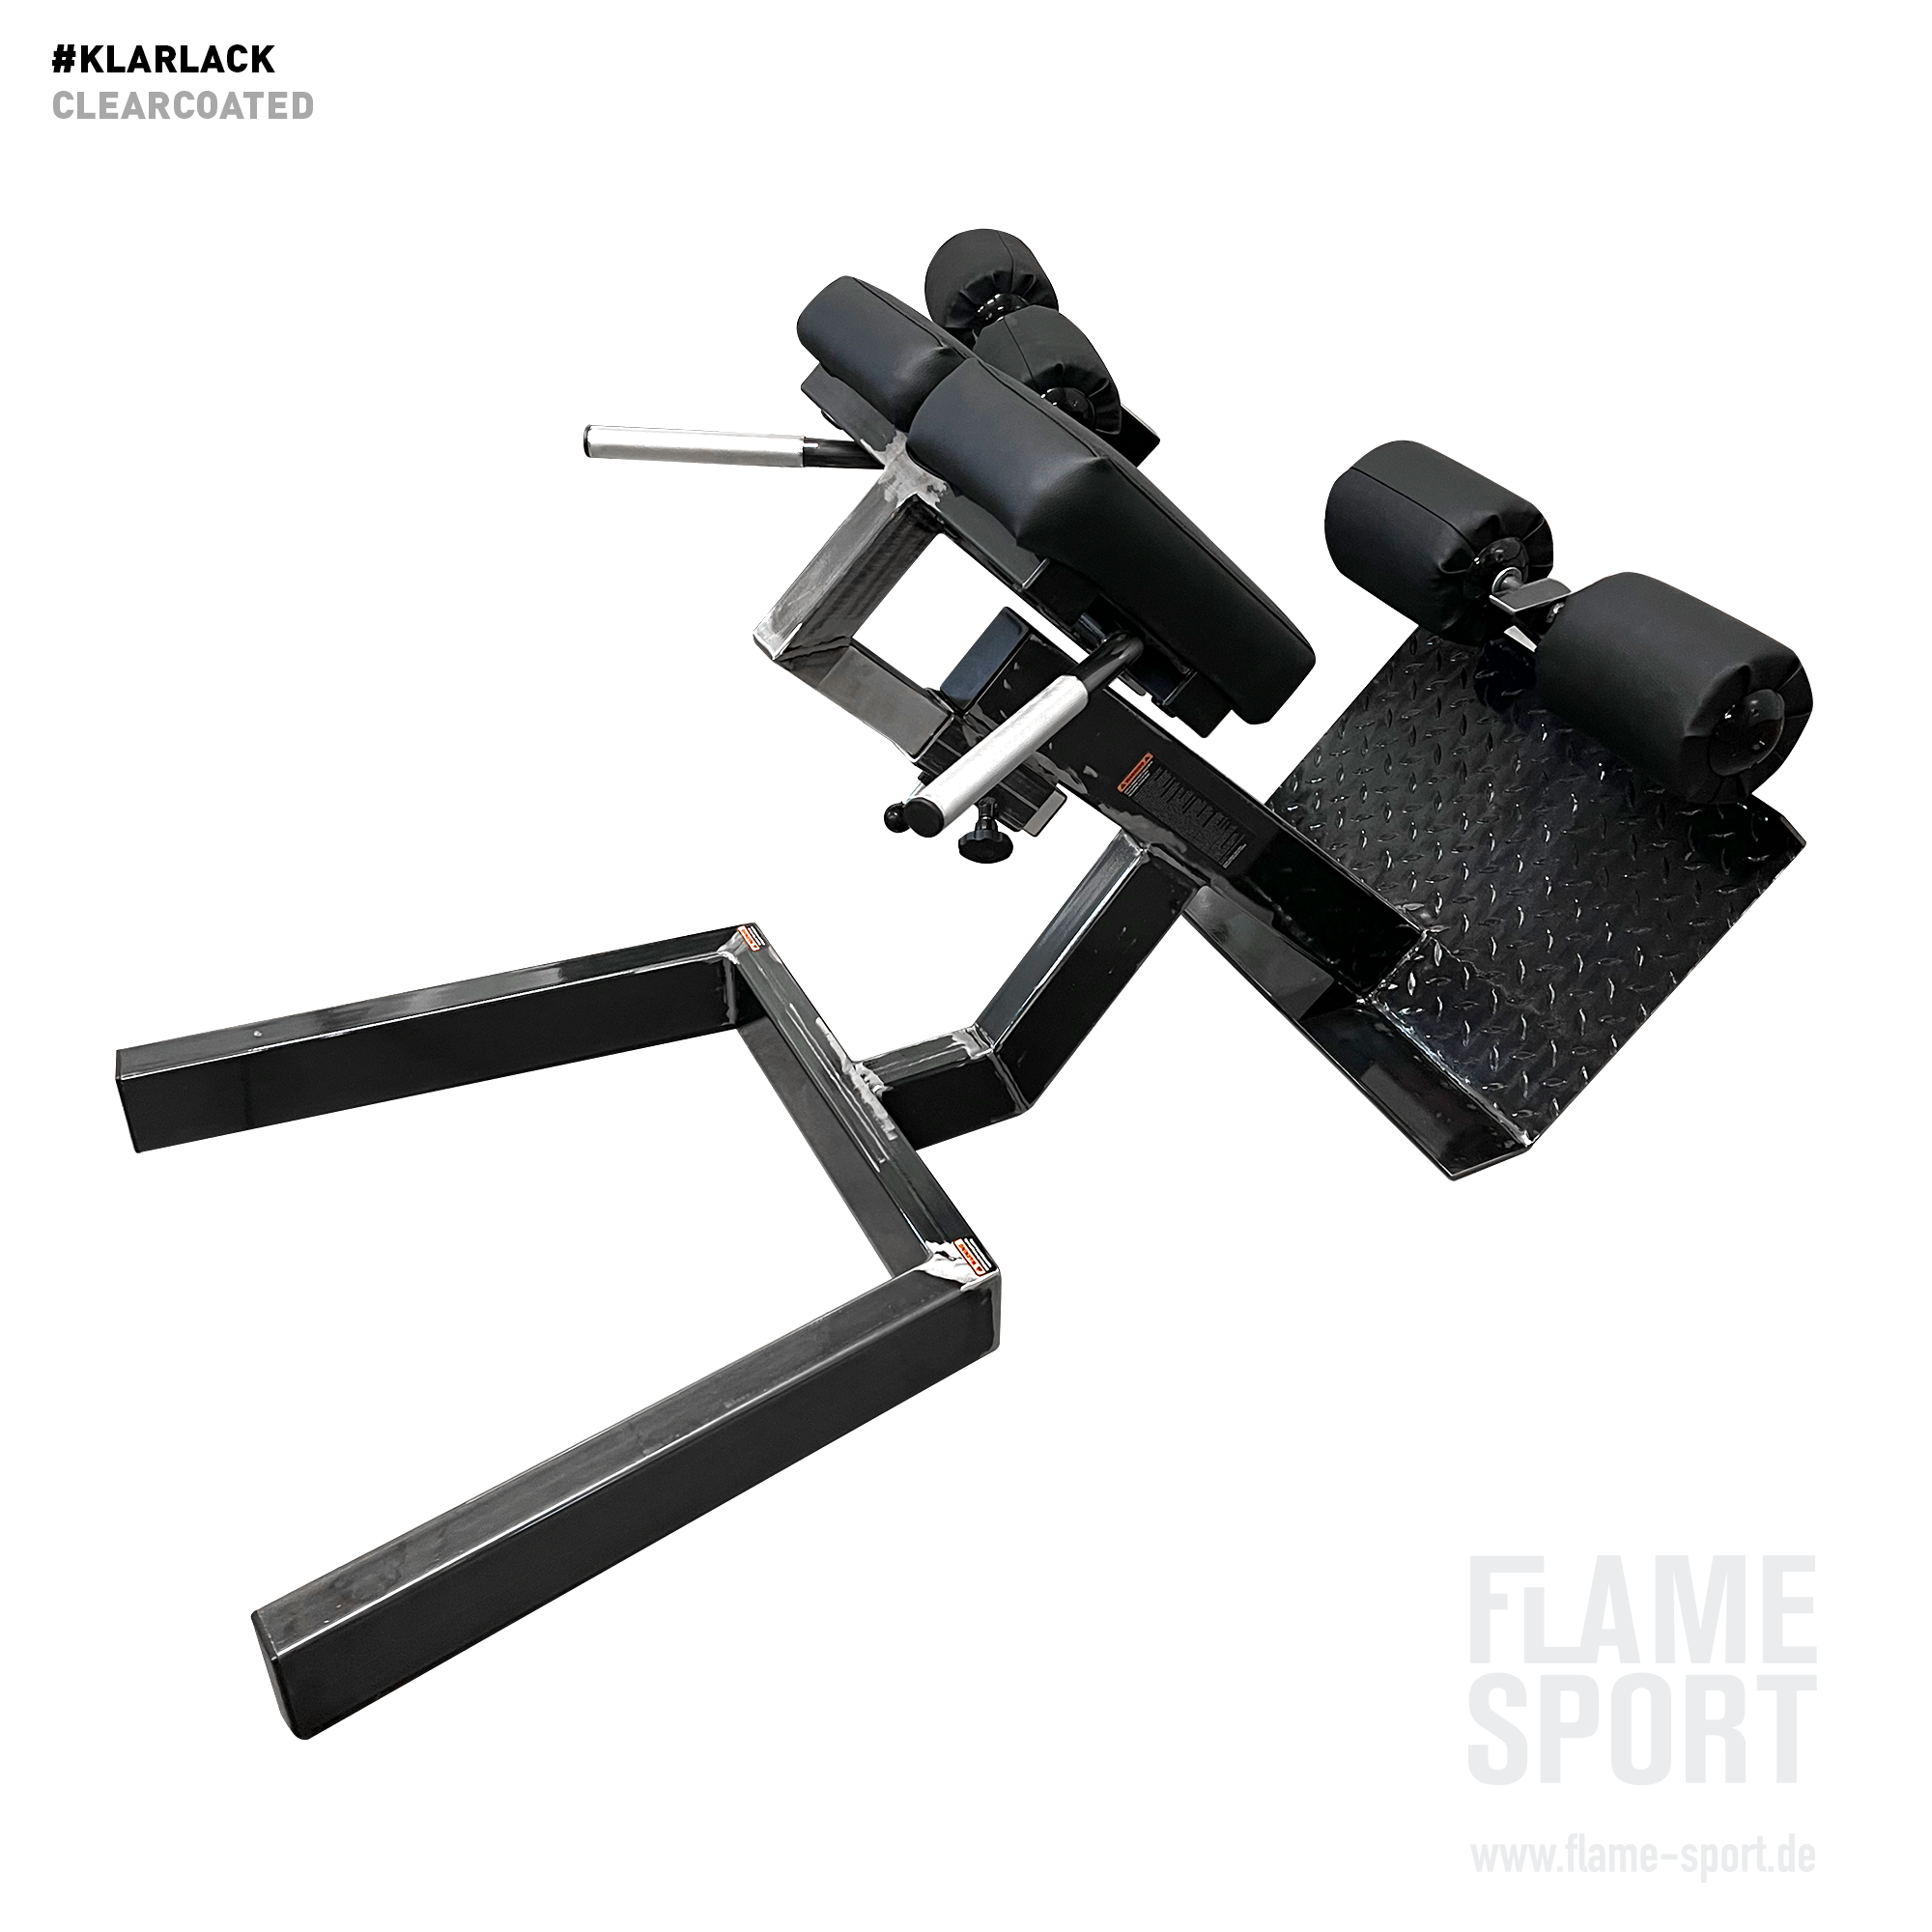 FLAME SPORT Rückentrainer/Roman Chair/ Hyperextension bank (3L)